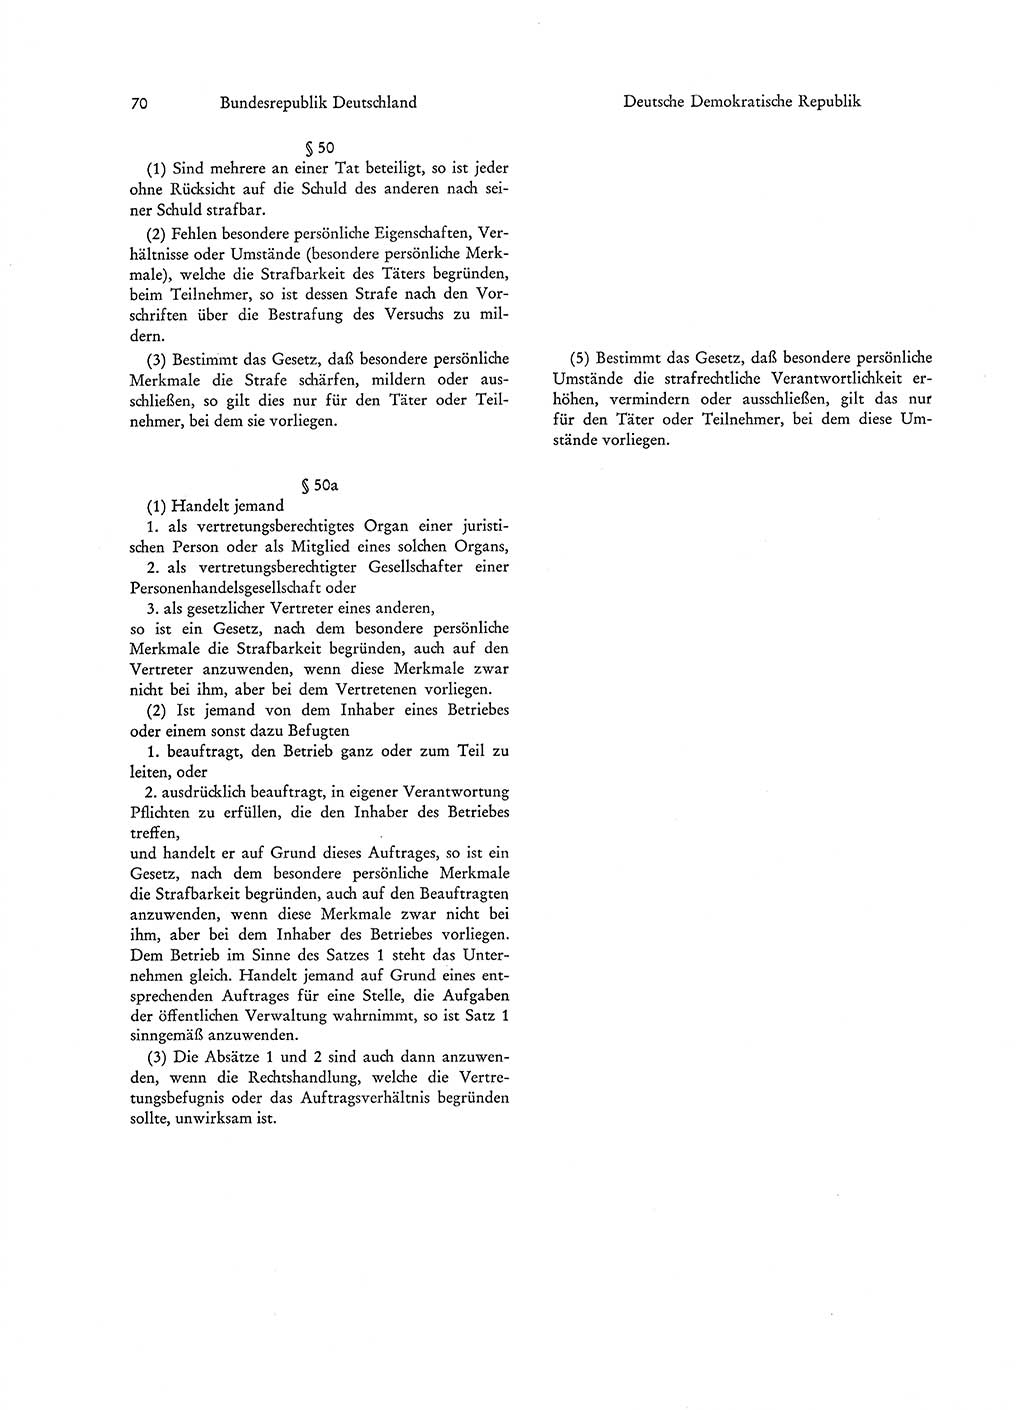 Strafgesetzgebung in Deutschland [Bundesrepublik Deutschland (BRD) und Deutsche Demokratische Republik (DDR)] 1972, Seite 70 (Str.-Ges. Dtl. StGB BRD DDR 1972, S. 70)